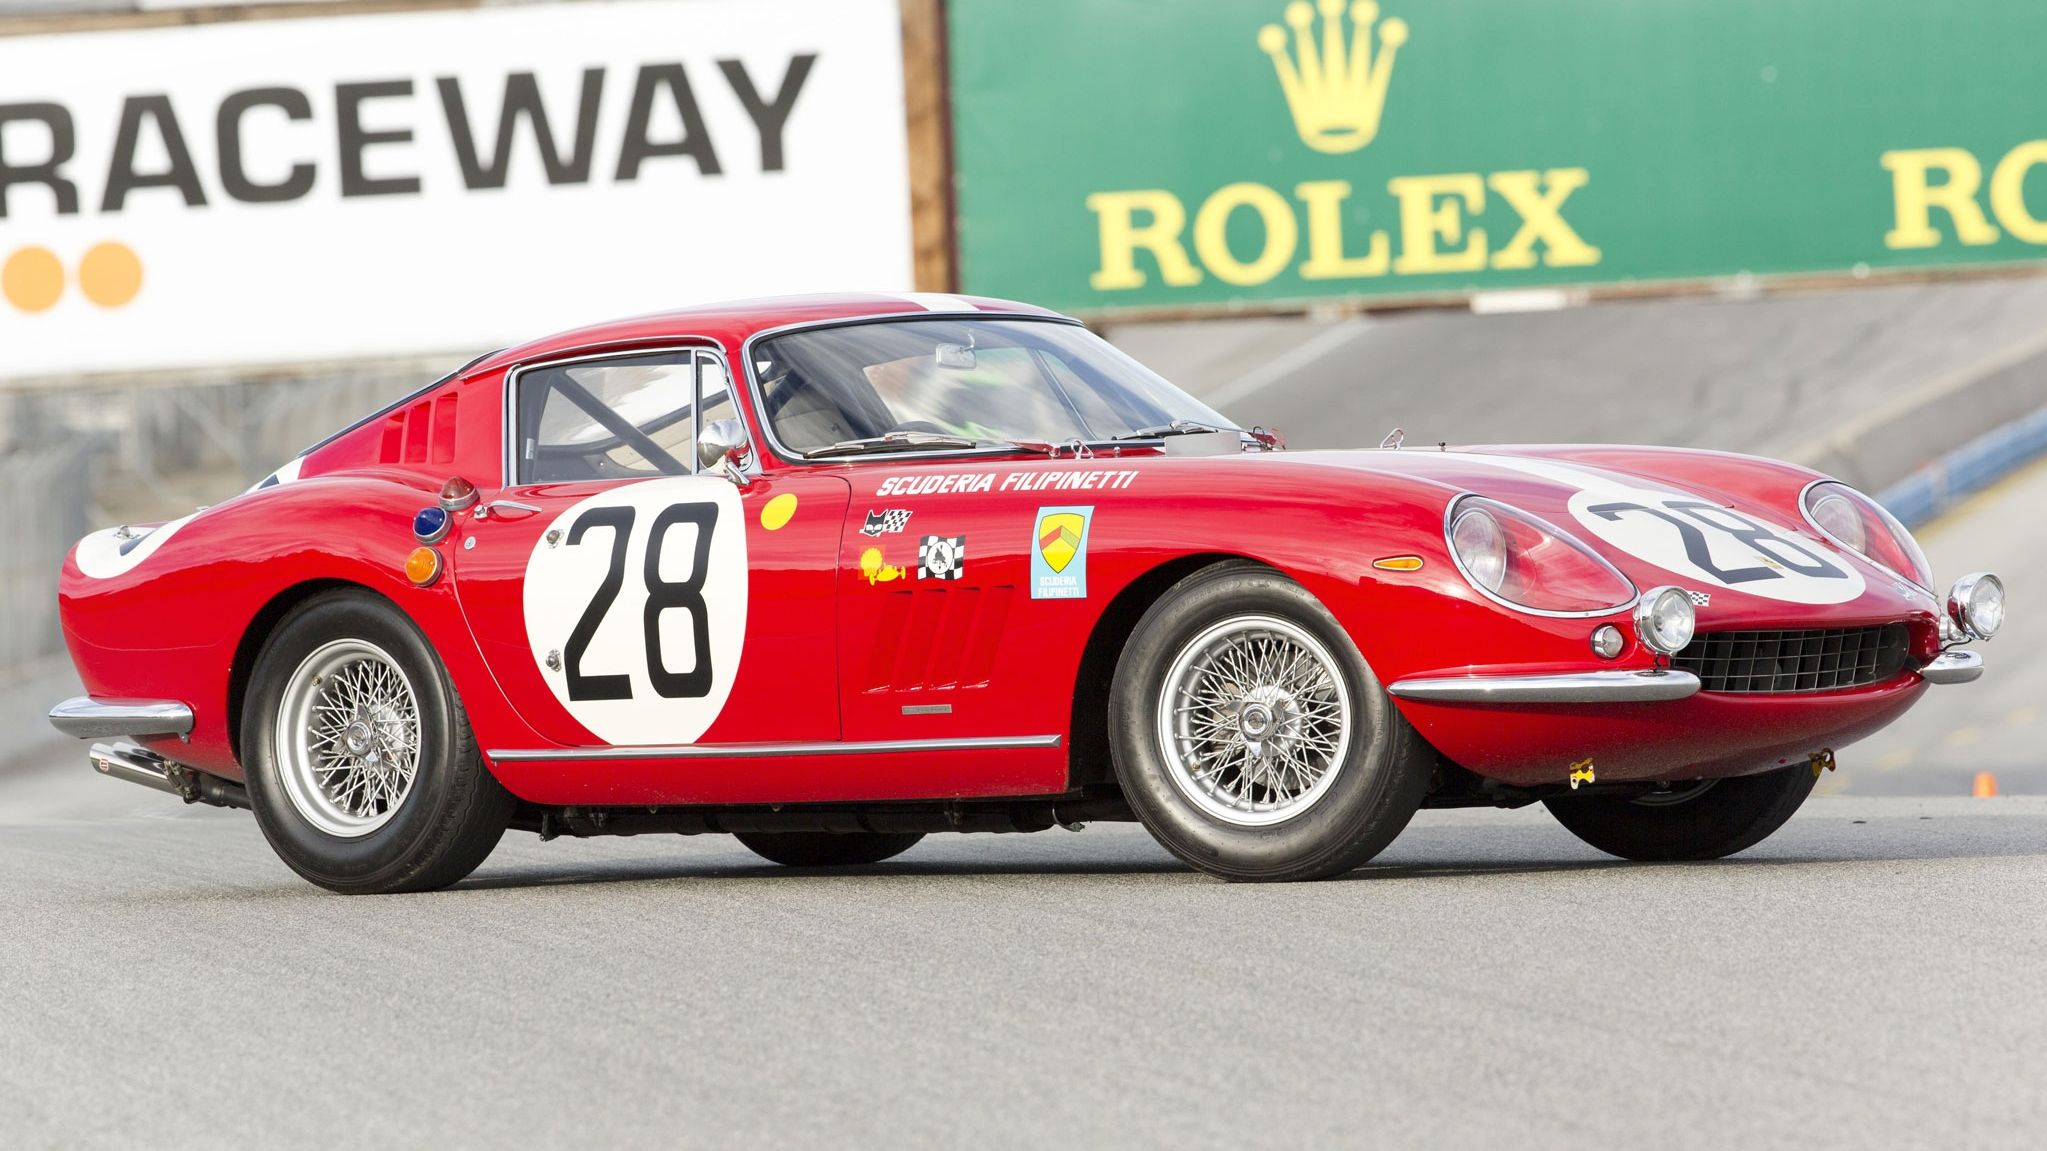 1966 - 1967 Ferrari 275 Gran Turismo Berlinetta Competizione Scaglietti